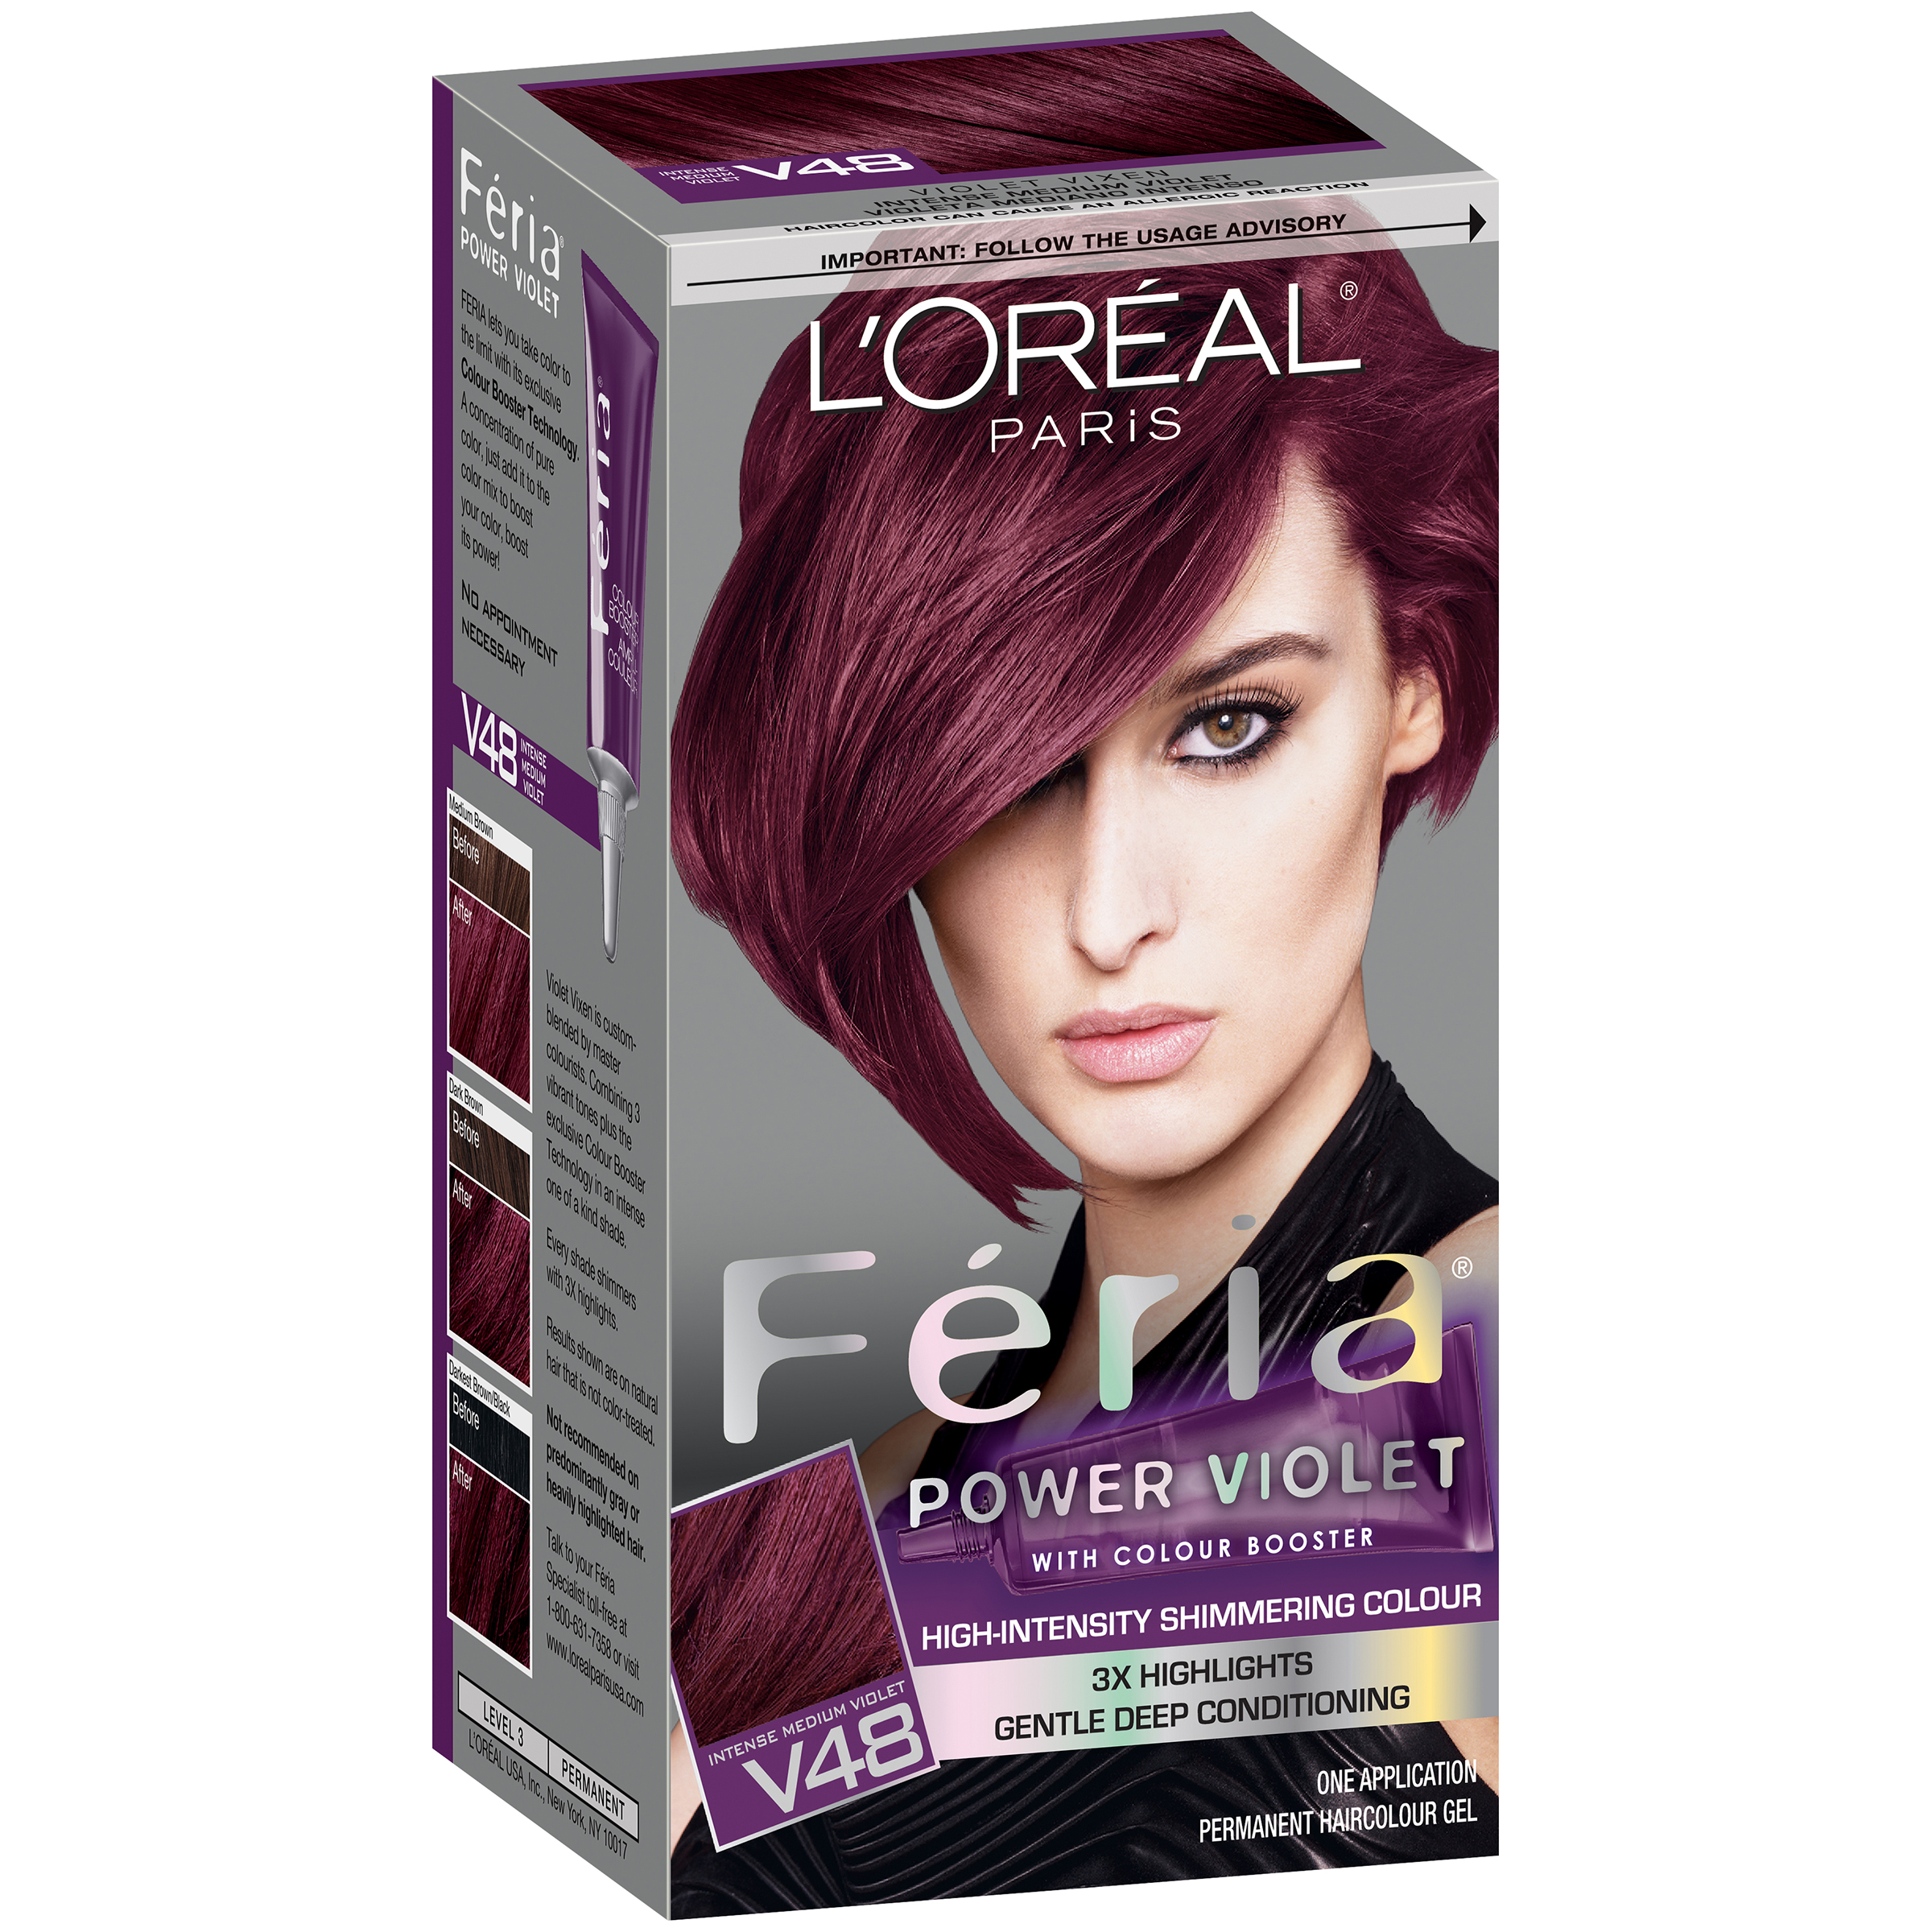 LOreal Paris Feria Power Hair Color Shop Your Way Online